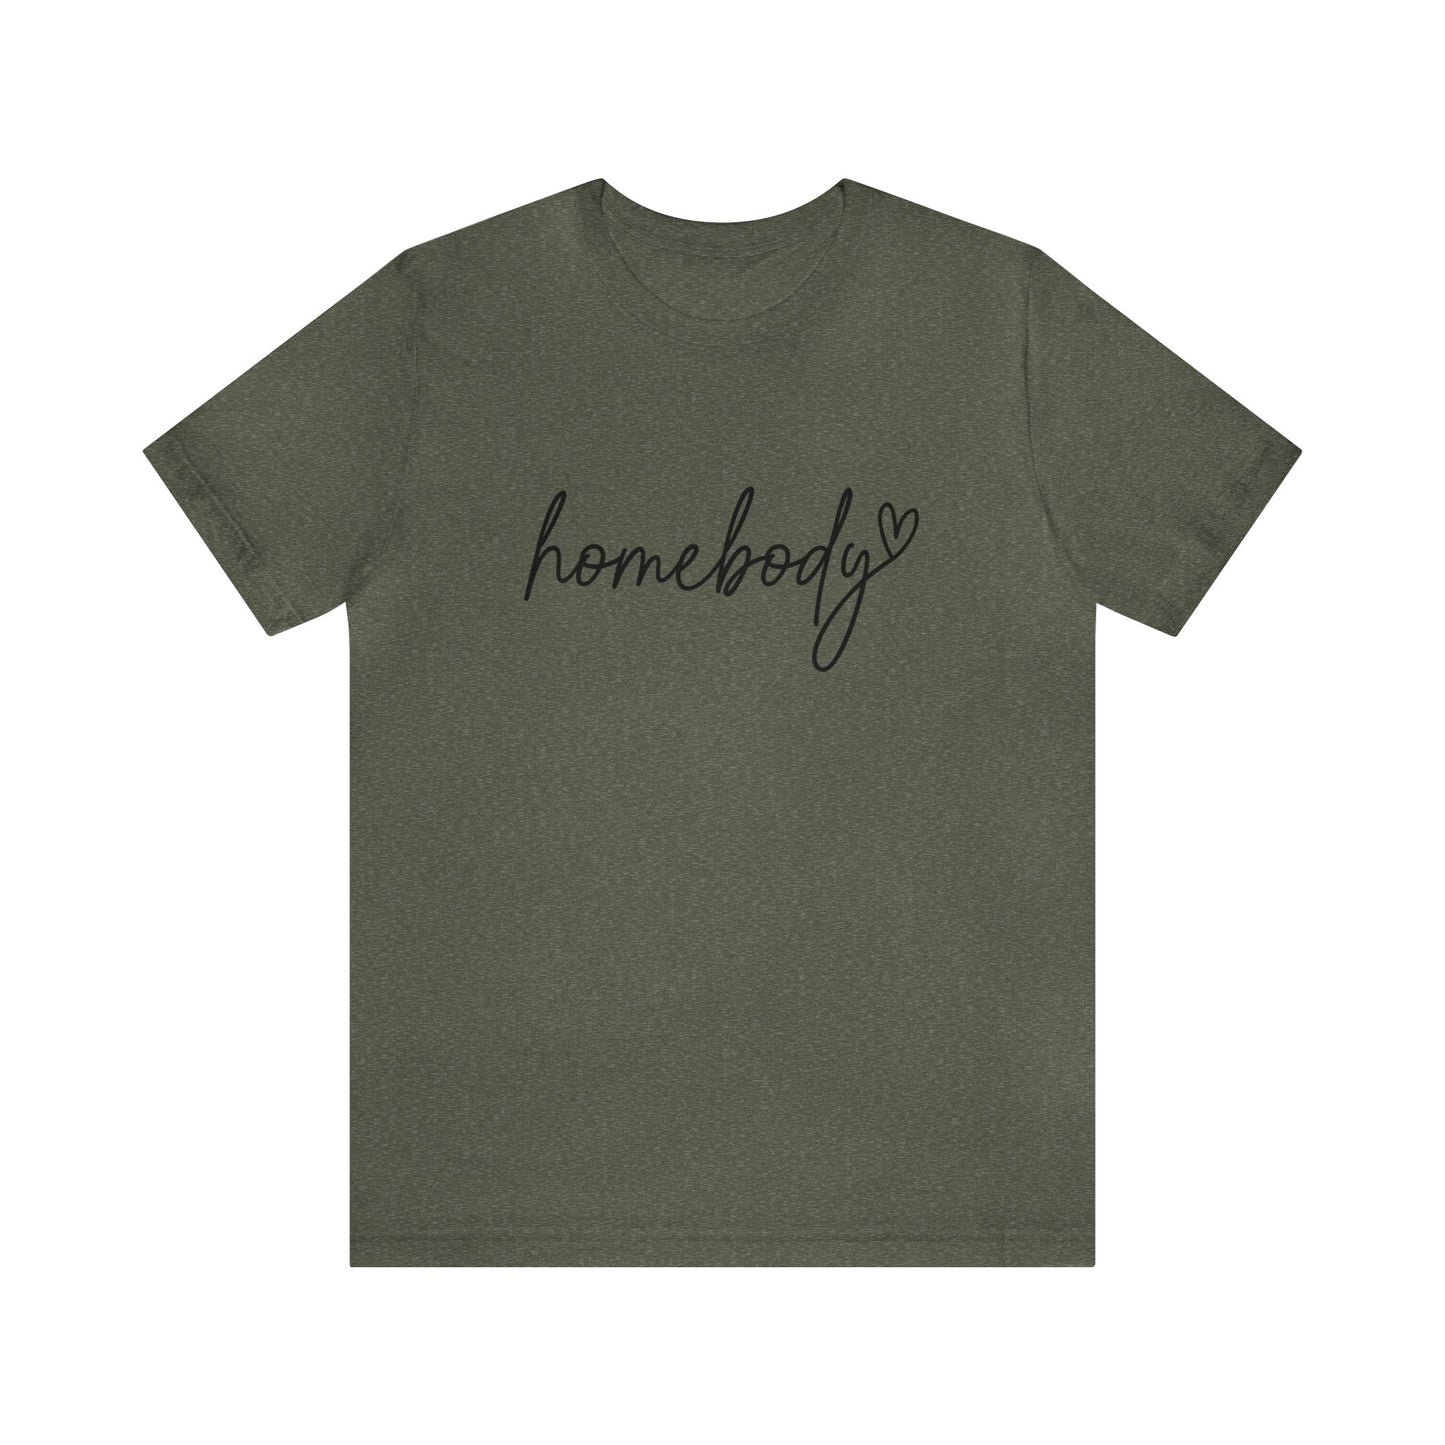 Homebody Tshirt